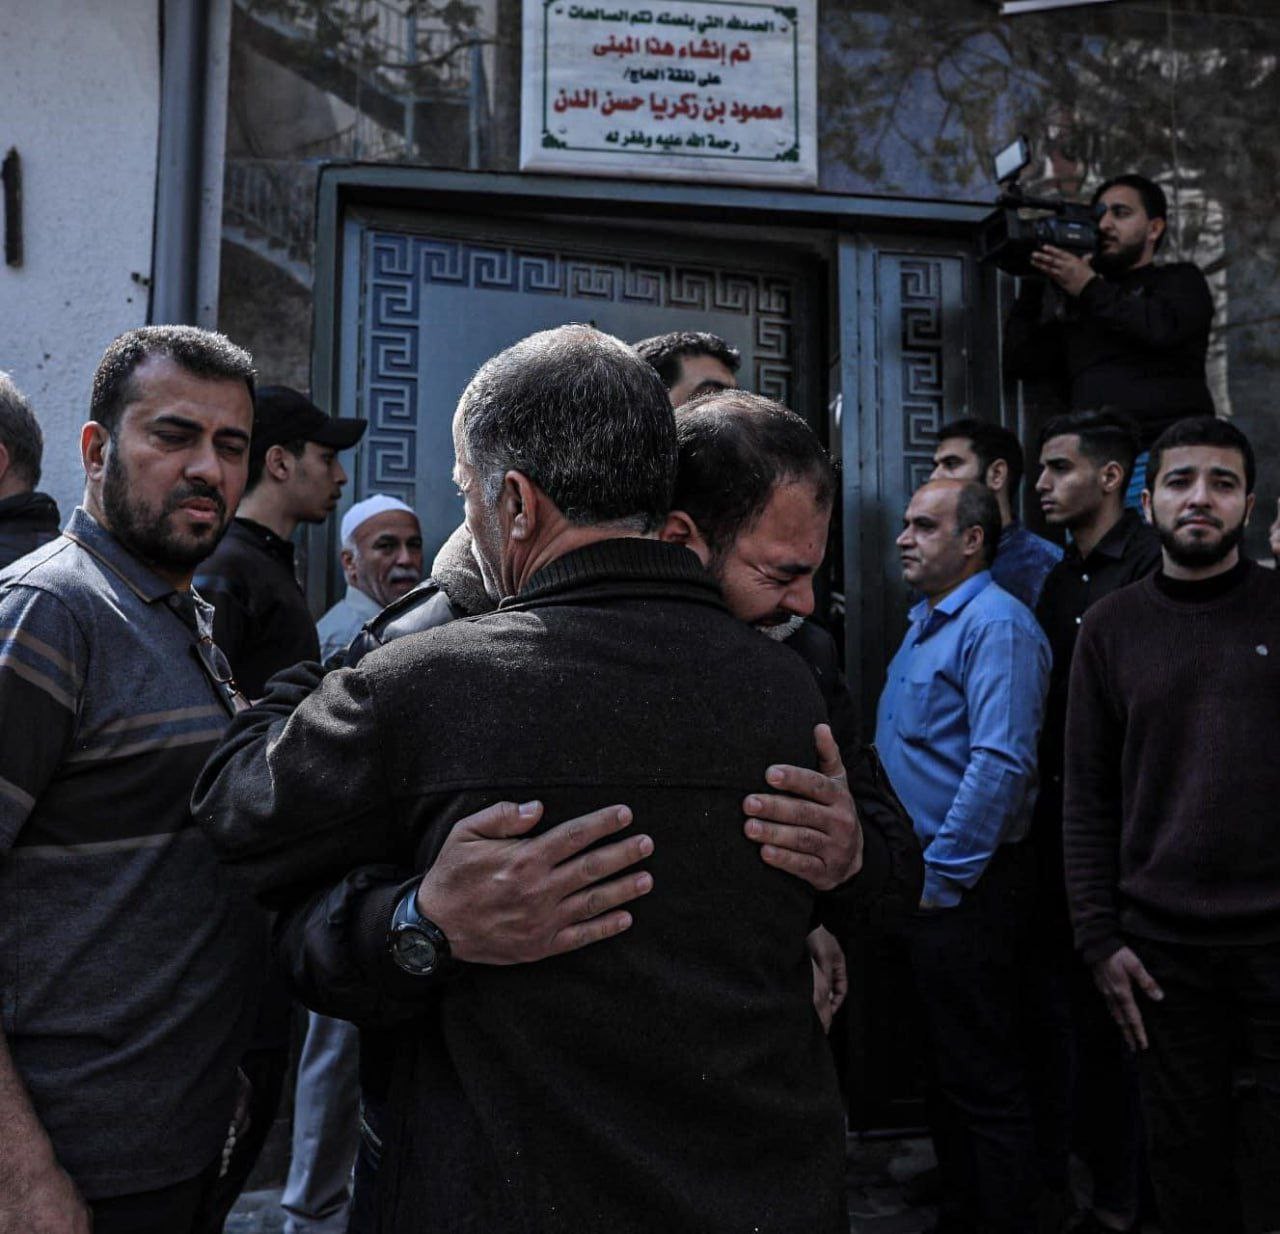 حالة من الحزن الشديد في وداع الذين ارتقوا بعدوان الاحتلال على قطاع غزة 1.jpg